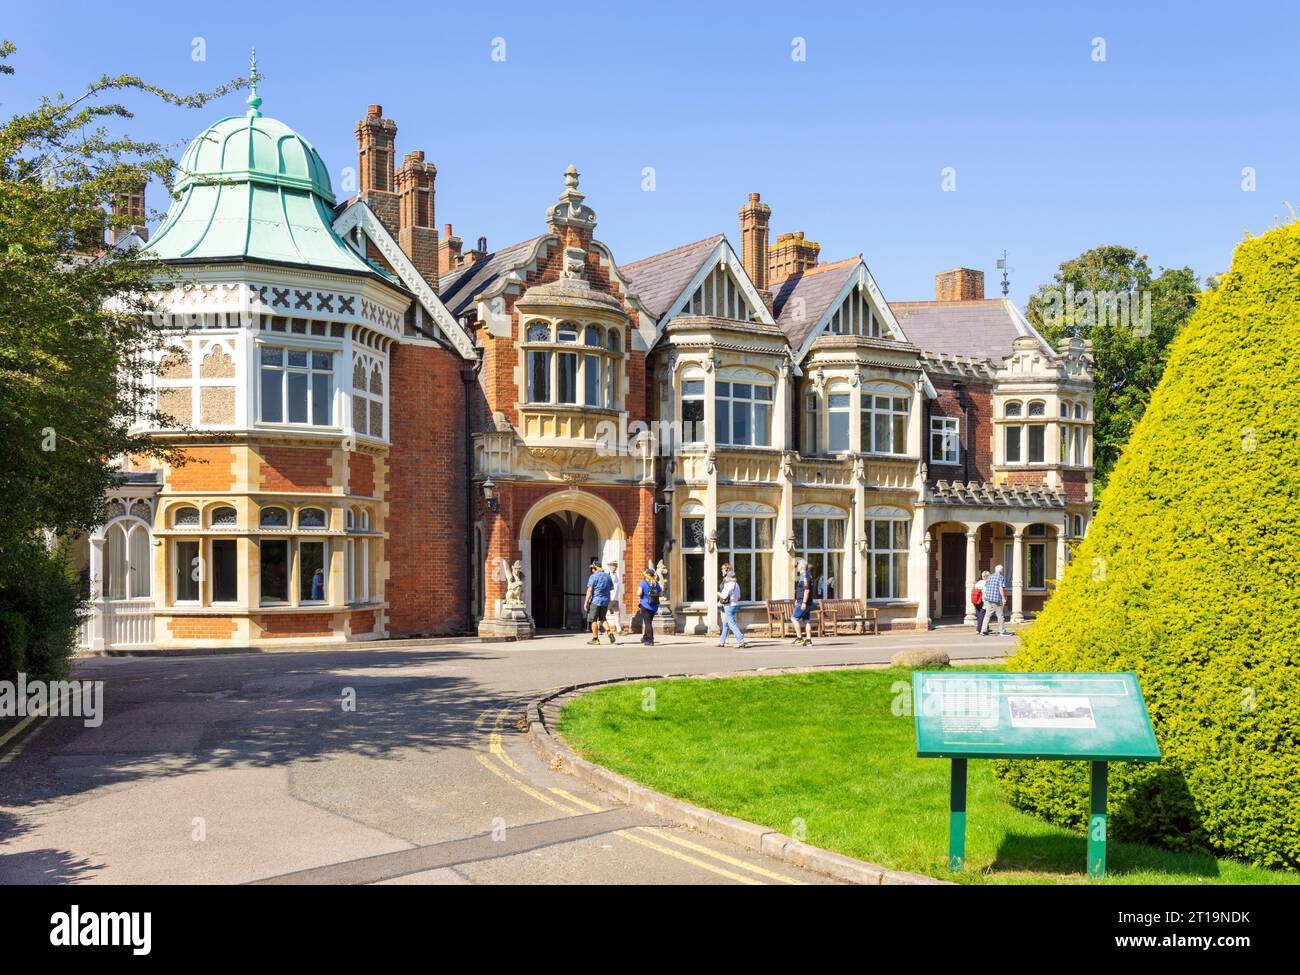 Bletchley Park House mit Tourgruppe, die das Bletchley Park Mansion Bletchley Park Milton Keynes Buckinghamshire England Großbritannien GB Europa betritt Stockfoto